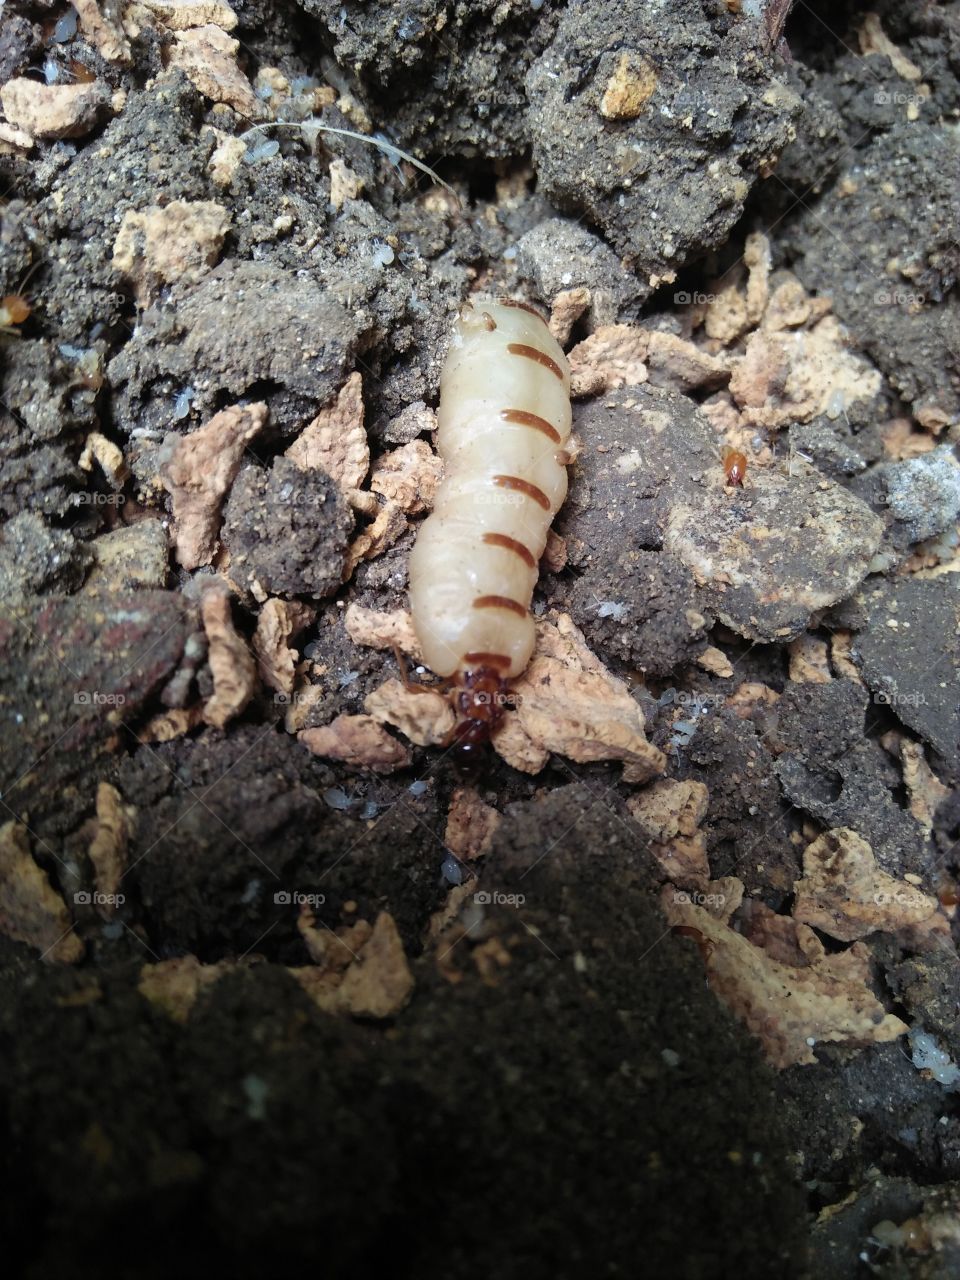 queen of termites